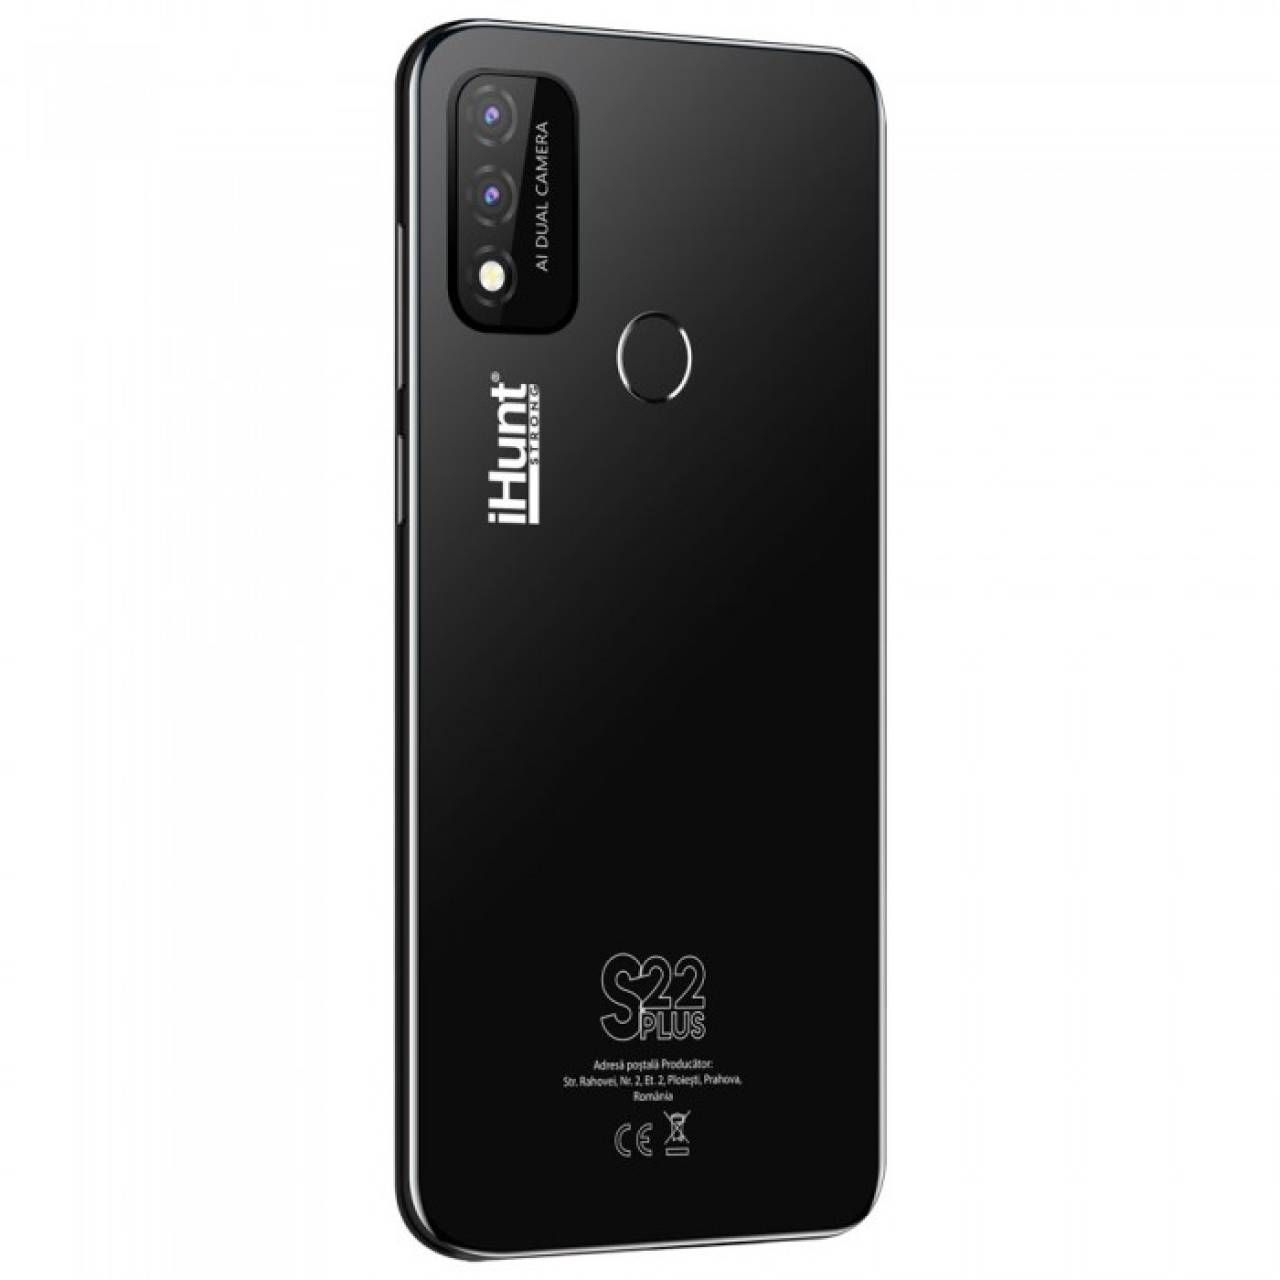 Telefon Mobil iHunt S22 Plus Black, 4G, 16GB, 2GB RAM, Display 6.1